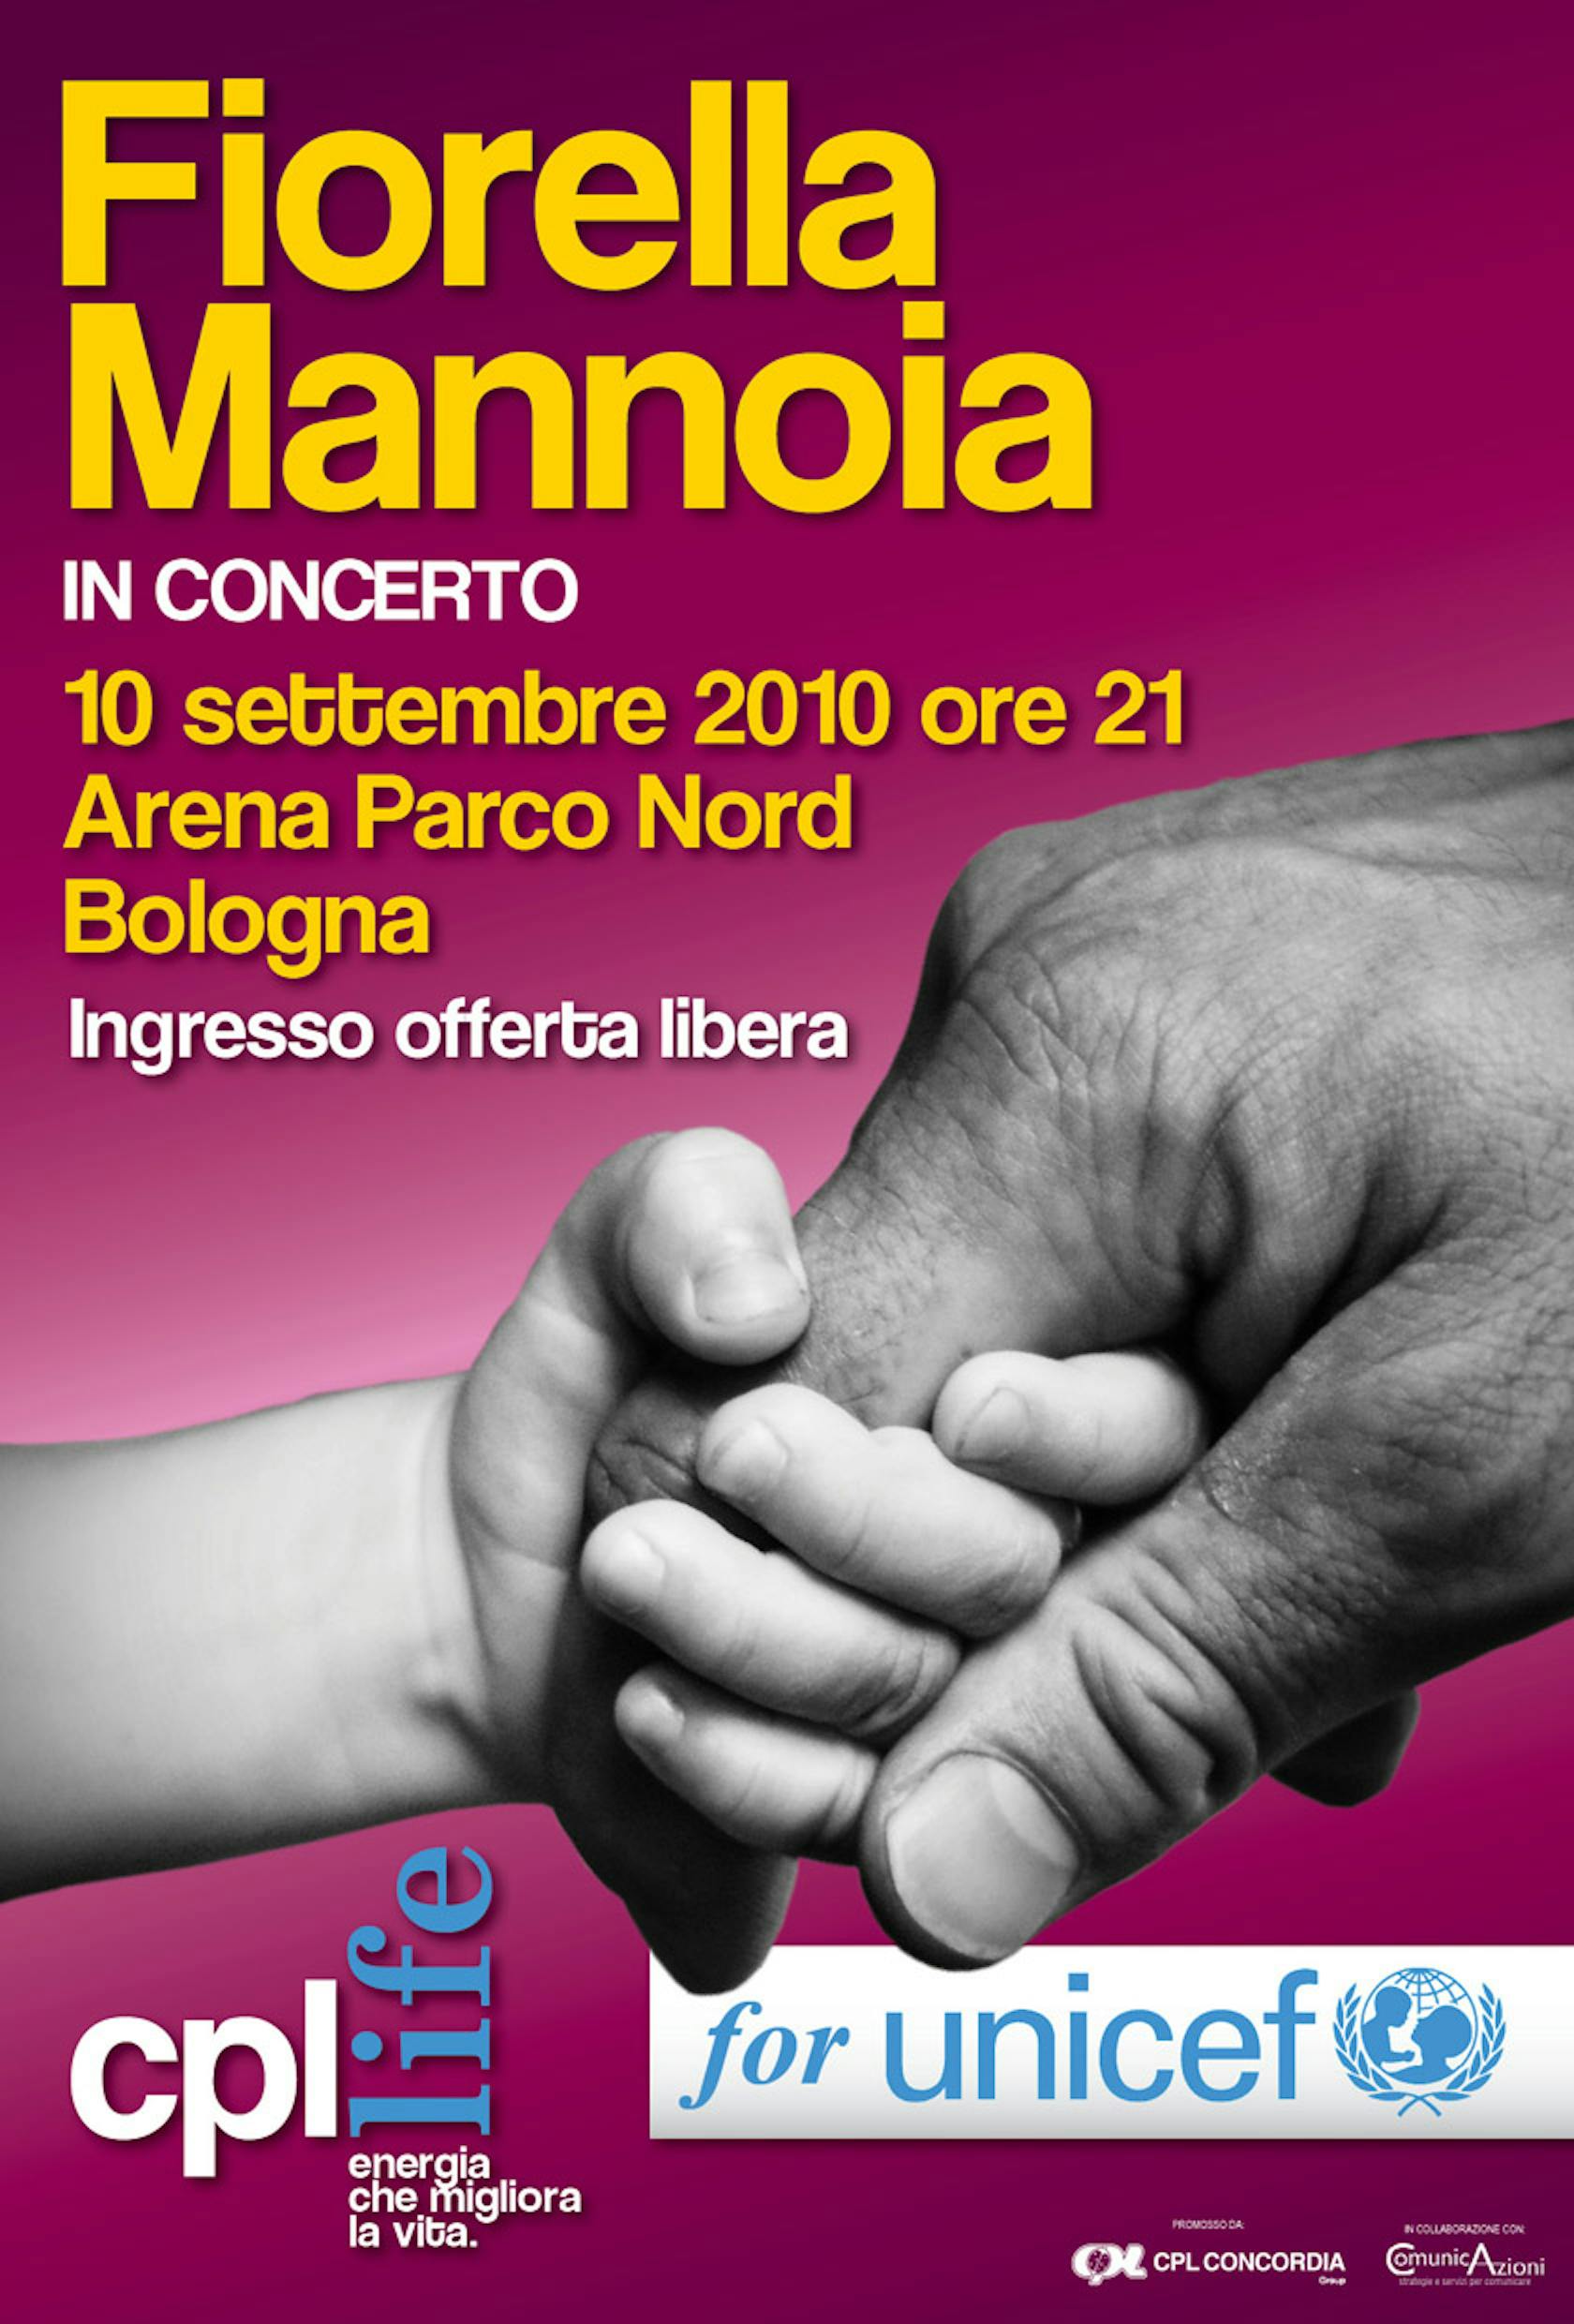 CPL sostiene UNICEF: Fiorella Mannoia in concerto